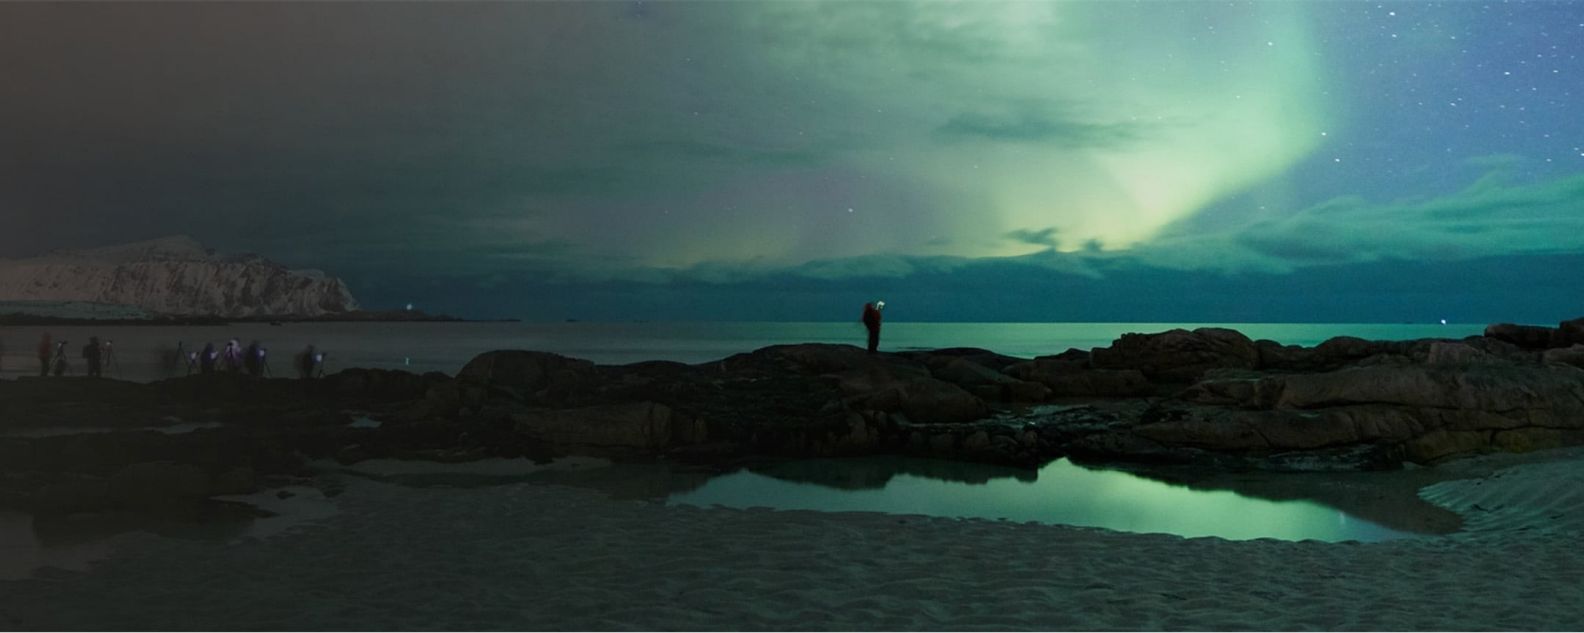 カナダ西海岸で海を眺める人